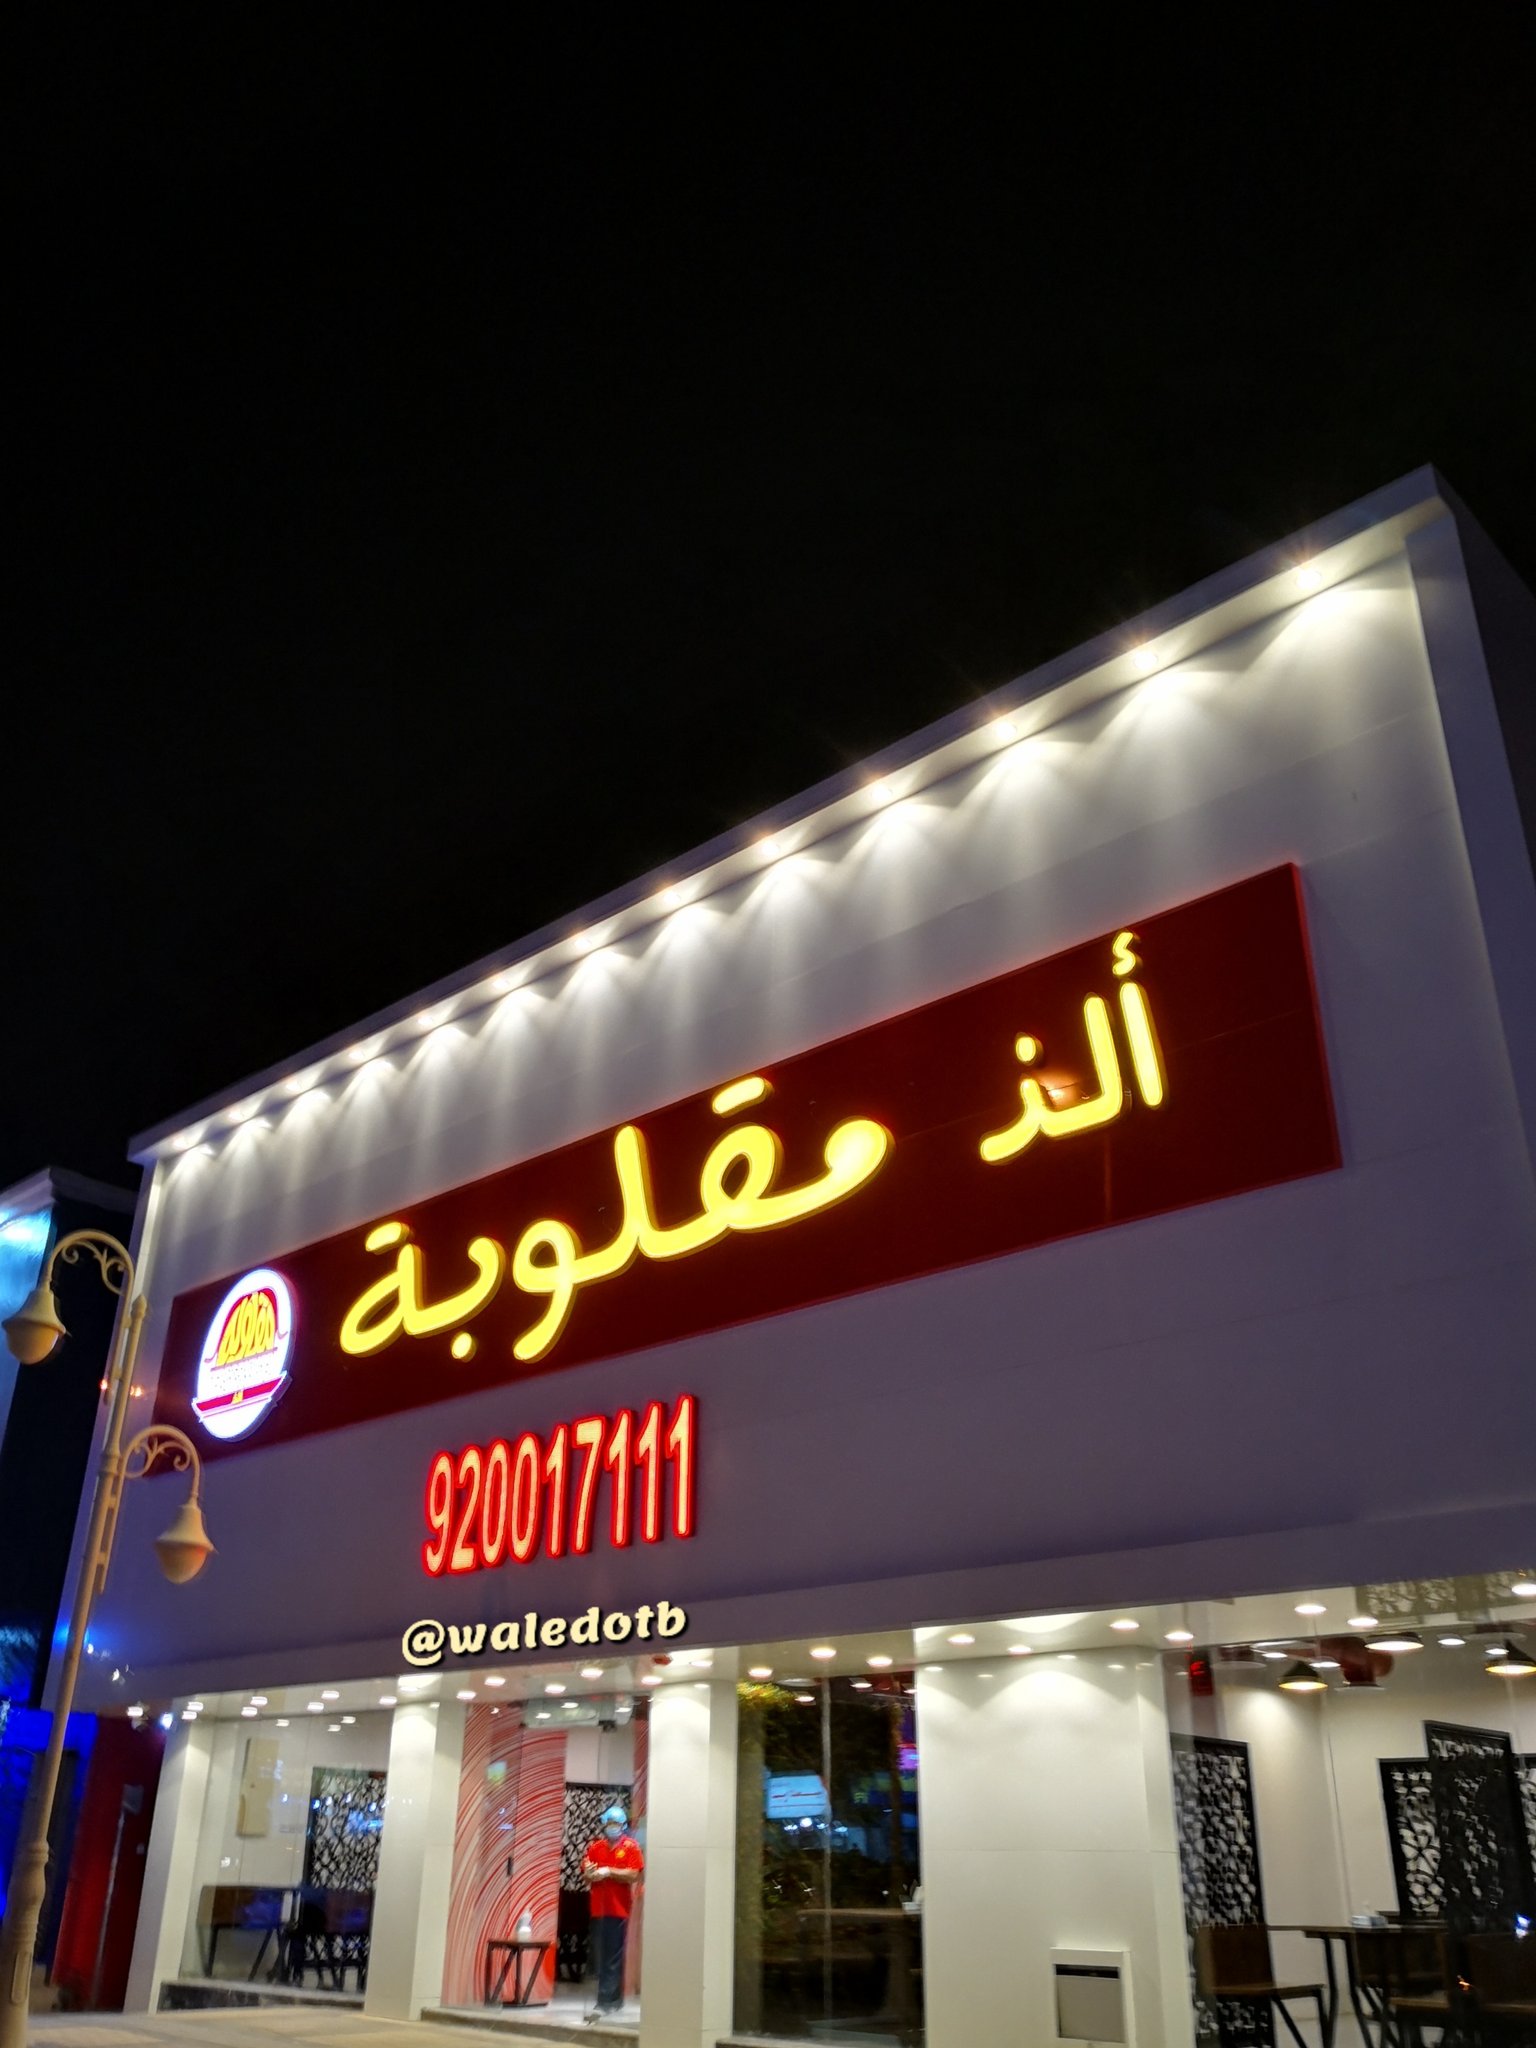 مطعم تلبينة الرياض